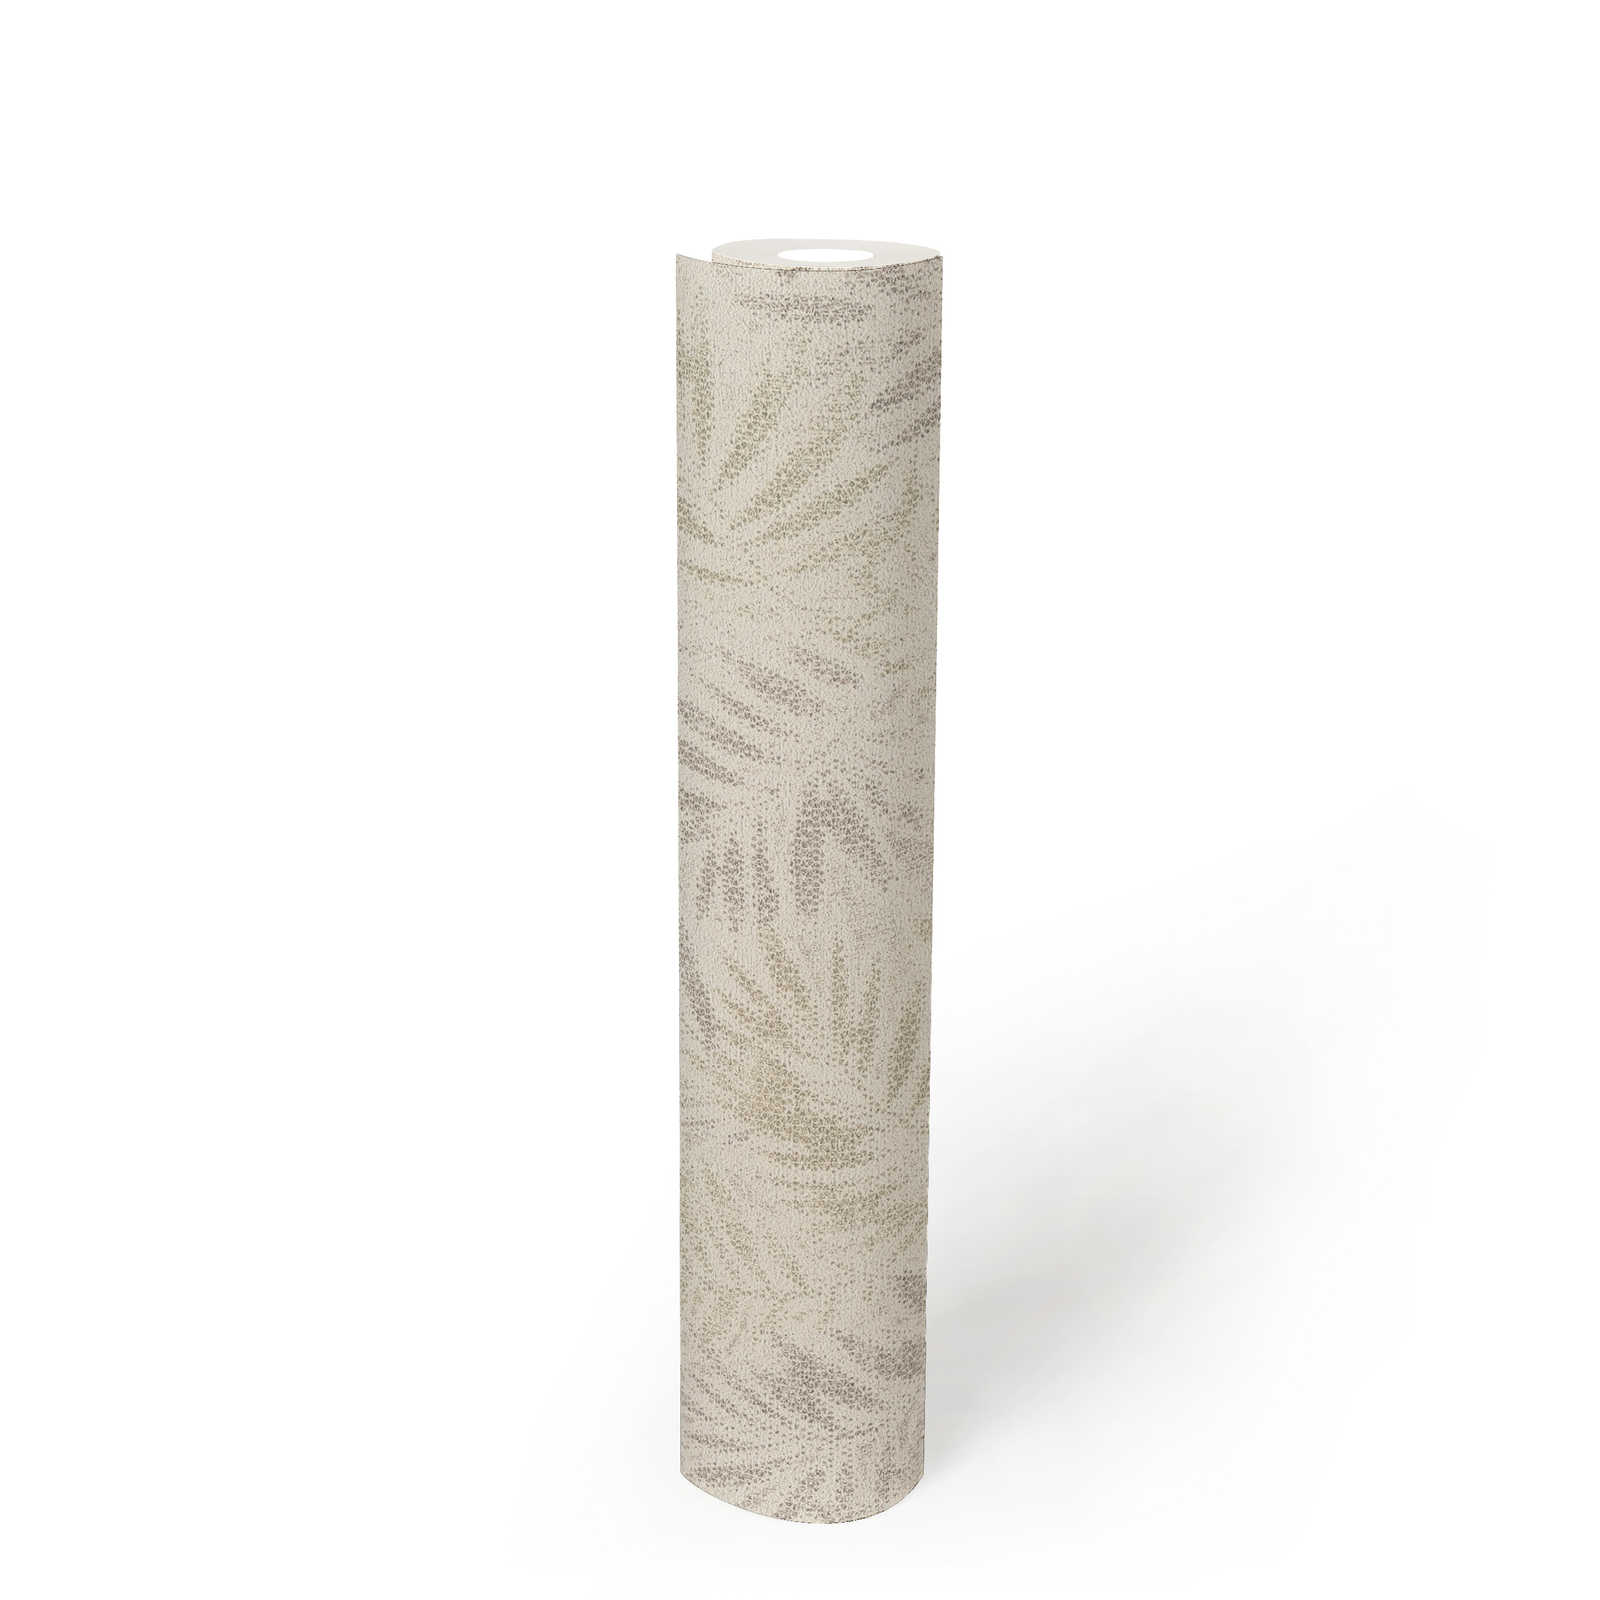             Papel pintado no tejido con motivo de hojas brillantes - blanco, gris, plata
        